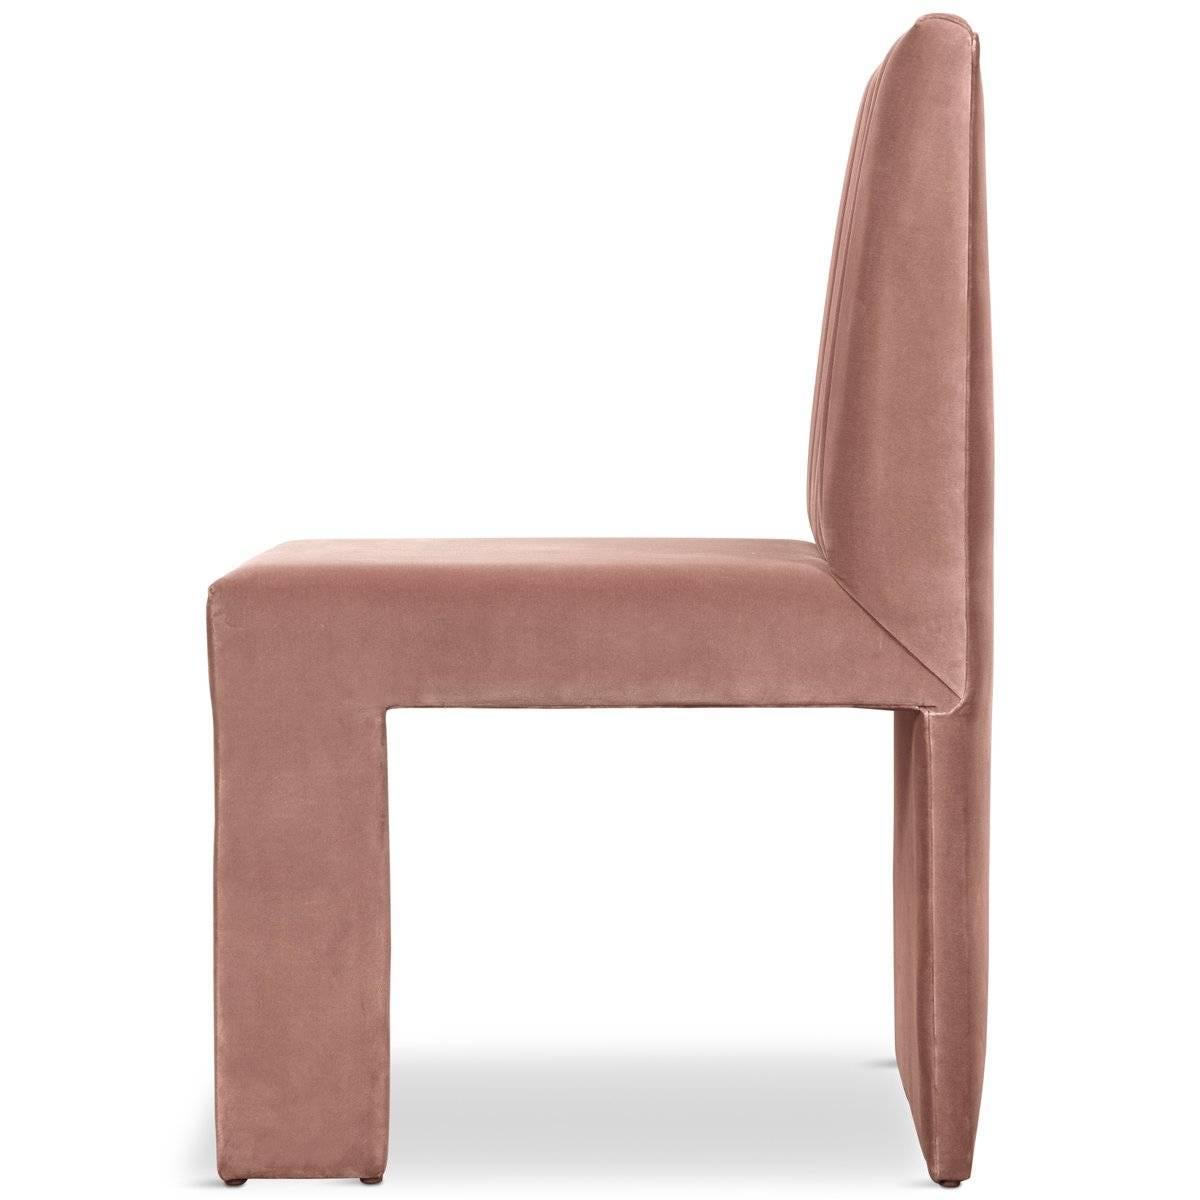 Asymmetric Modern Style St. Martin Dining Chair Lush Velvet Upholstery 7 colors For Sale 7